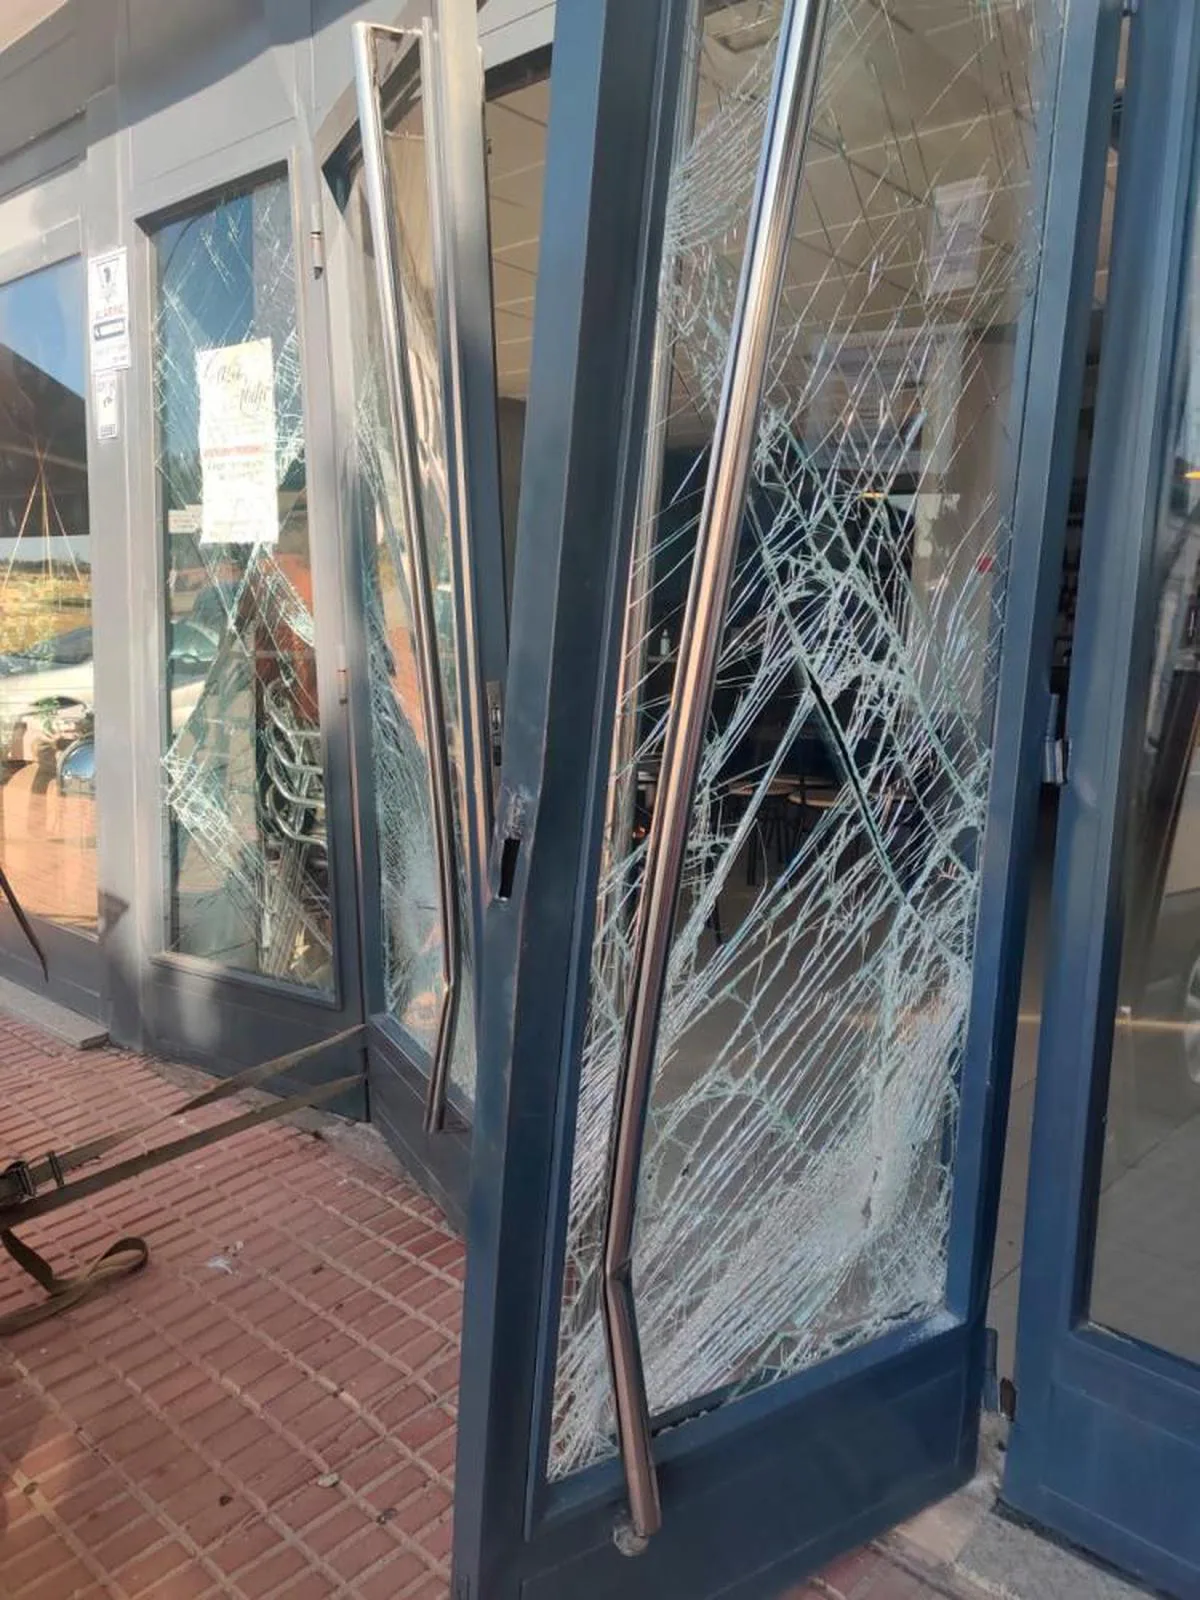 La puerta de entrada del restaurante, con daños ocasionados por los cacos.